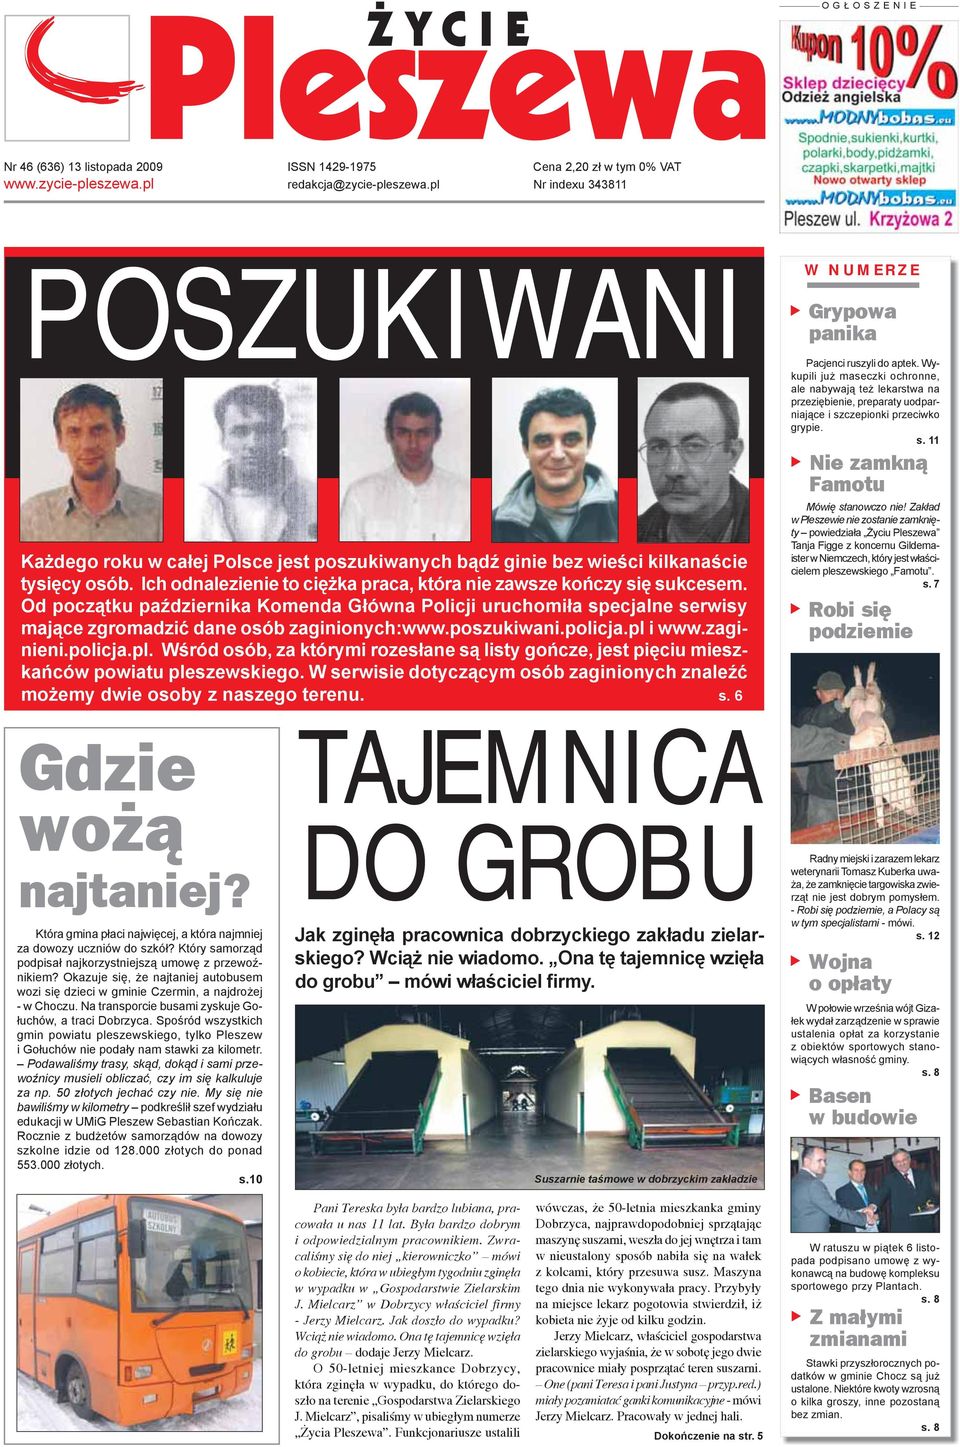 Od początku października Komenda Główna Policji uruchomiła specjalne serwisy mające zgromadzić dane osób zaginionych:www.poszukiwani.policja.pl 